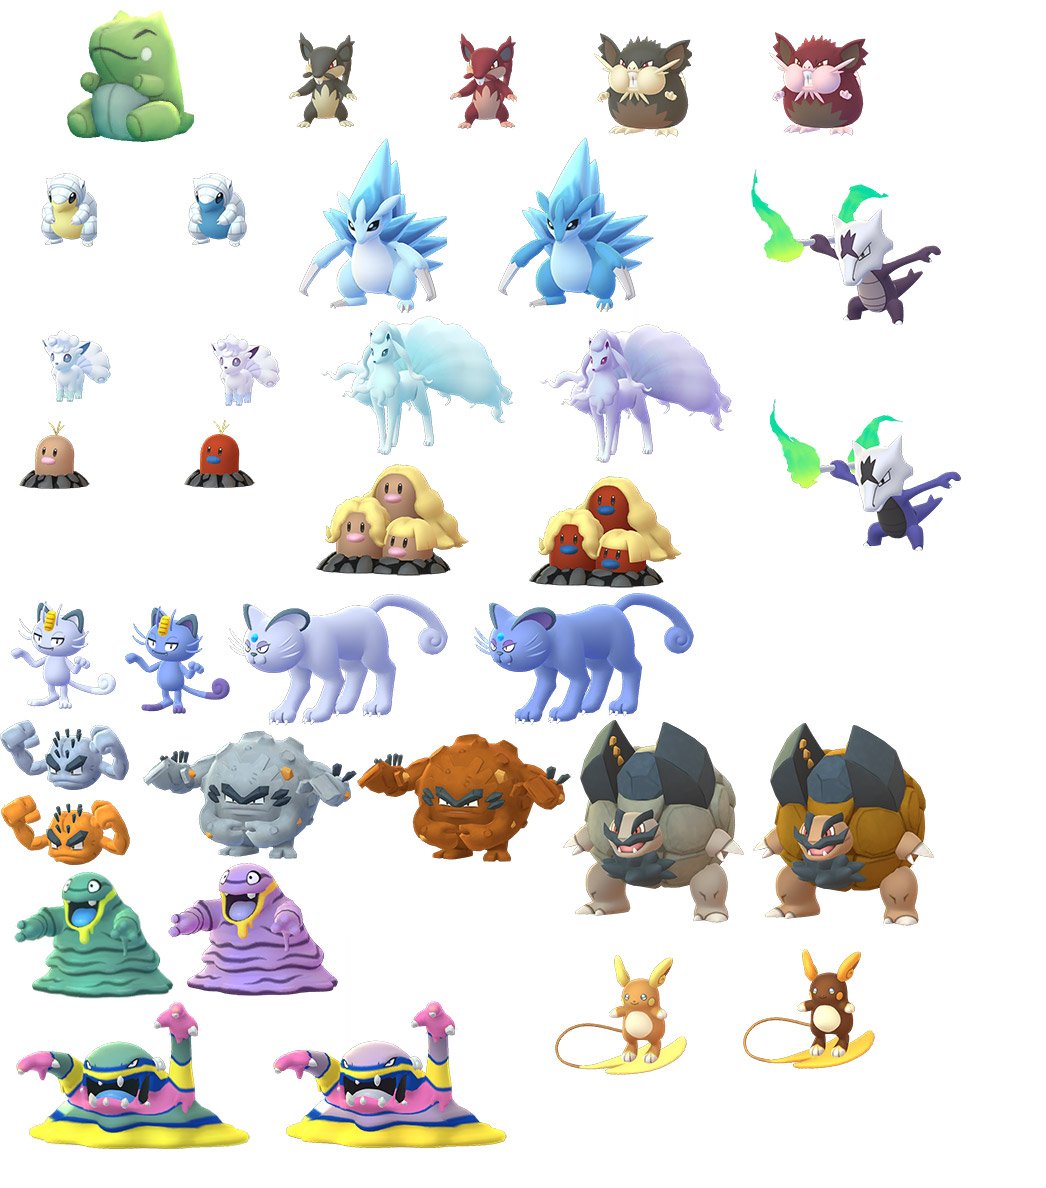 All Shiny Pokémon in Pokémon Go - Dot Esports